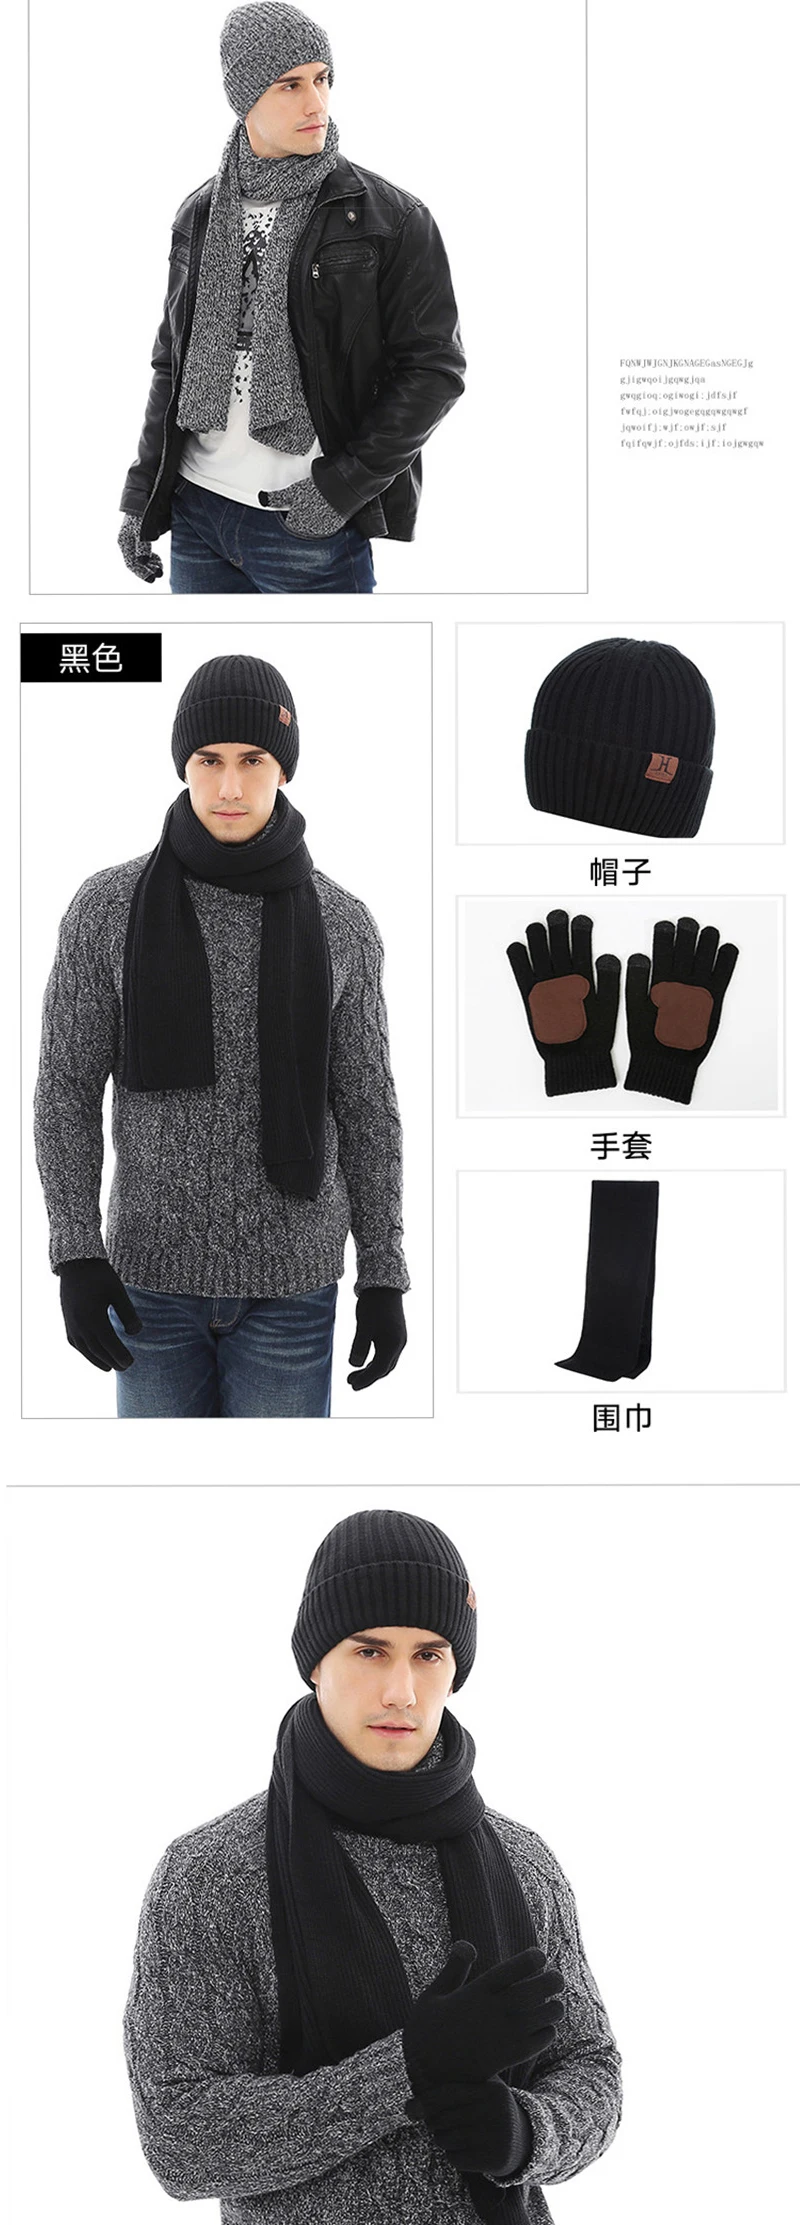 LaMaxPa 2018 новые модные однотонные утепленные человек шарф, шапка и перчатки наборы 3 шт. полосатый вязаный зимние теплые Beanis Обёрточная бумага